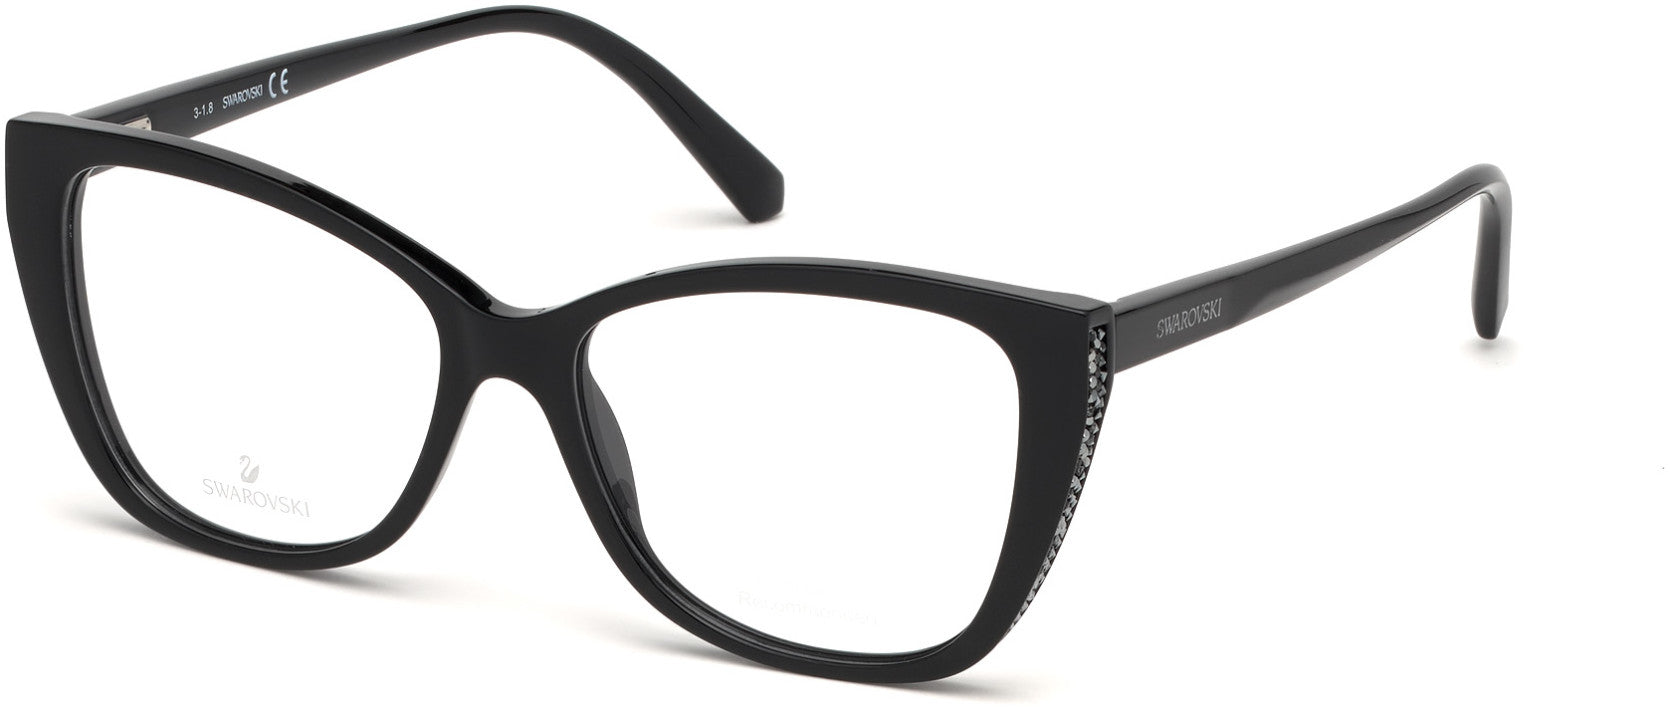 Swarovski SK5290 Square Eyeglasses 001-001 - Shiny Black